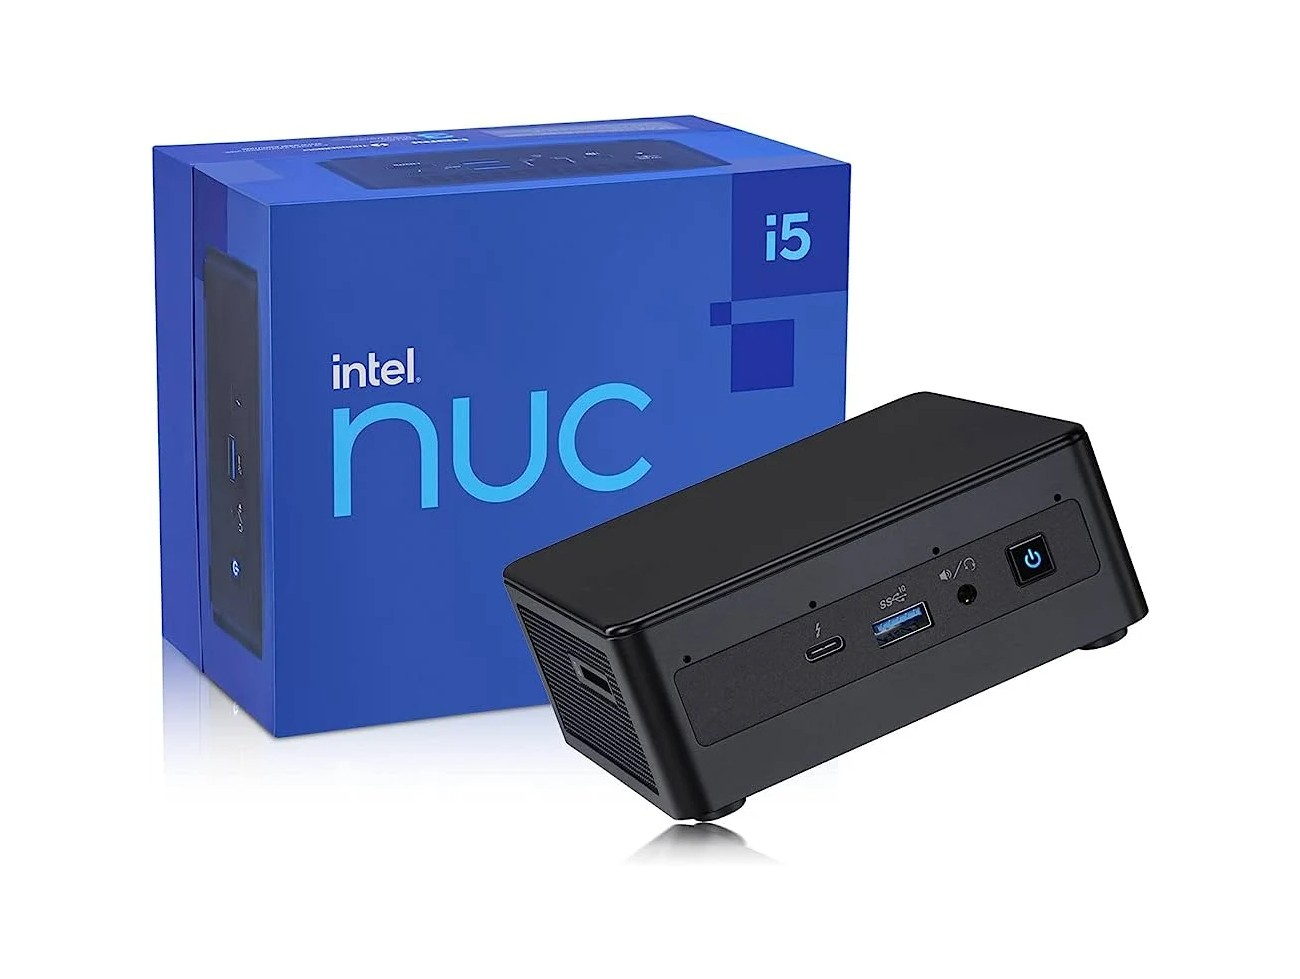 NUC 12 mini PC Intel Core i5 12 core Windows 11 Pro